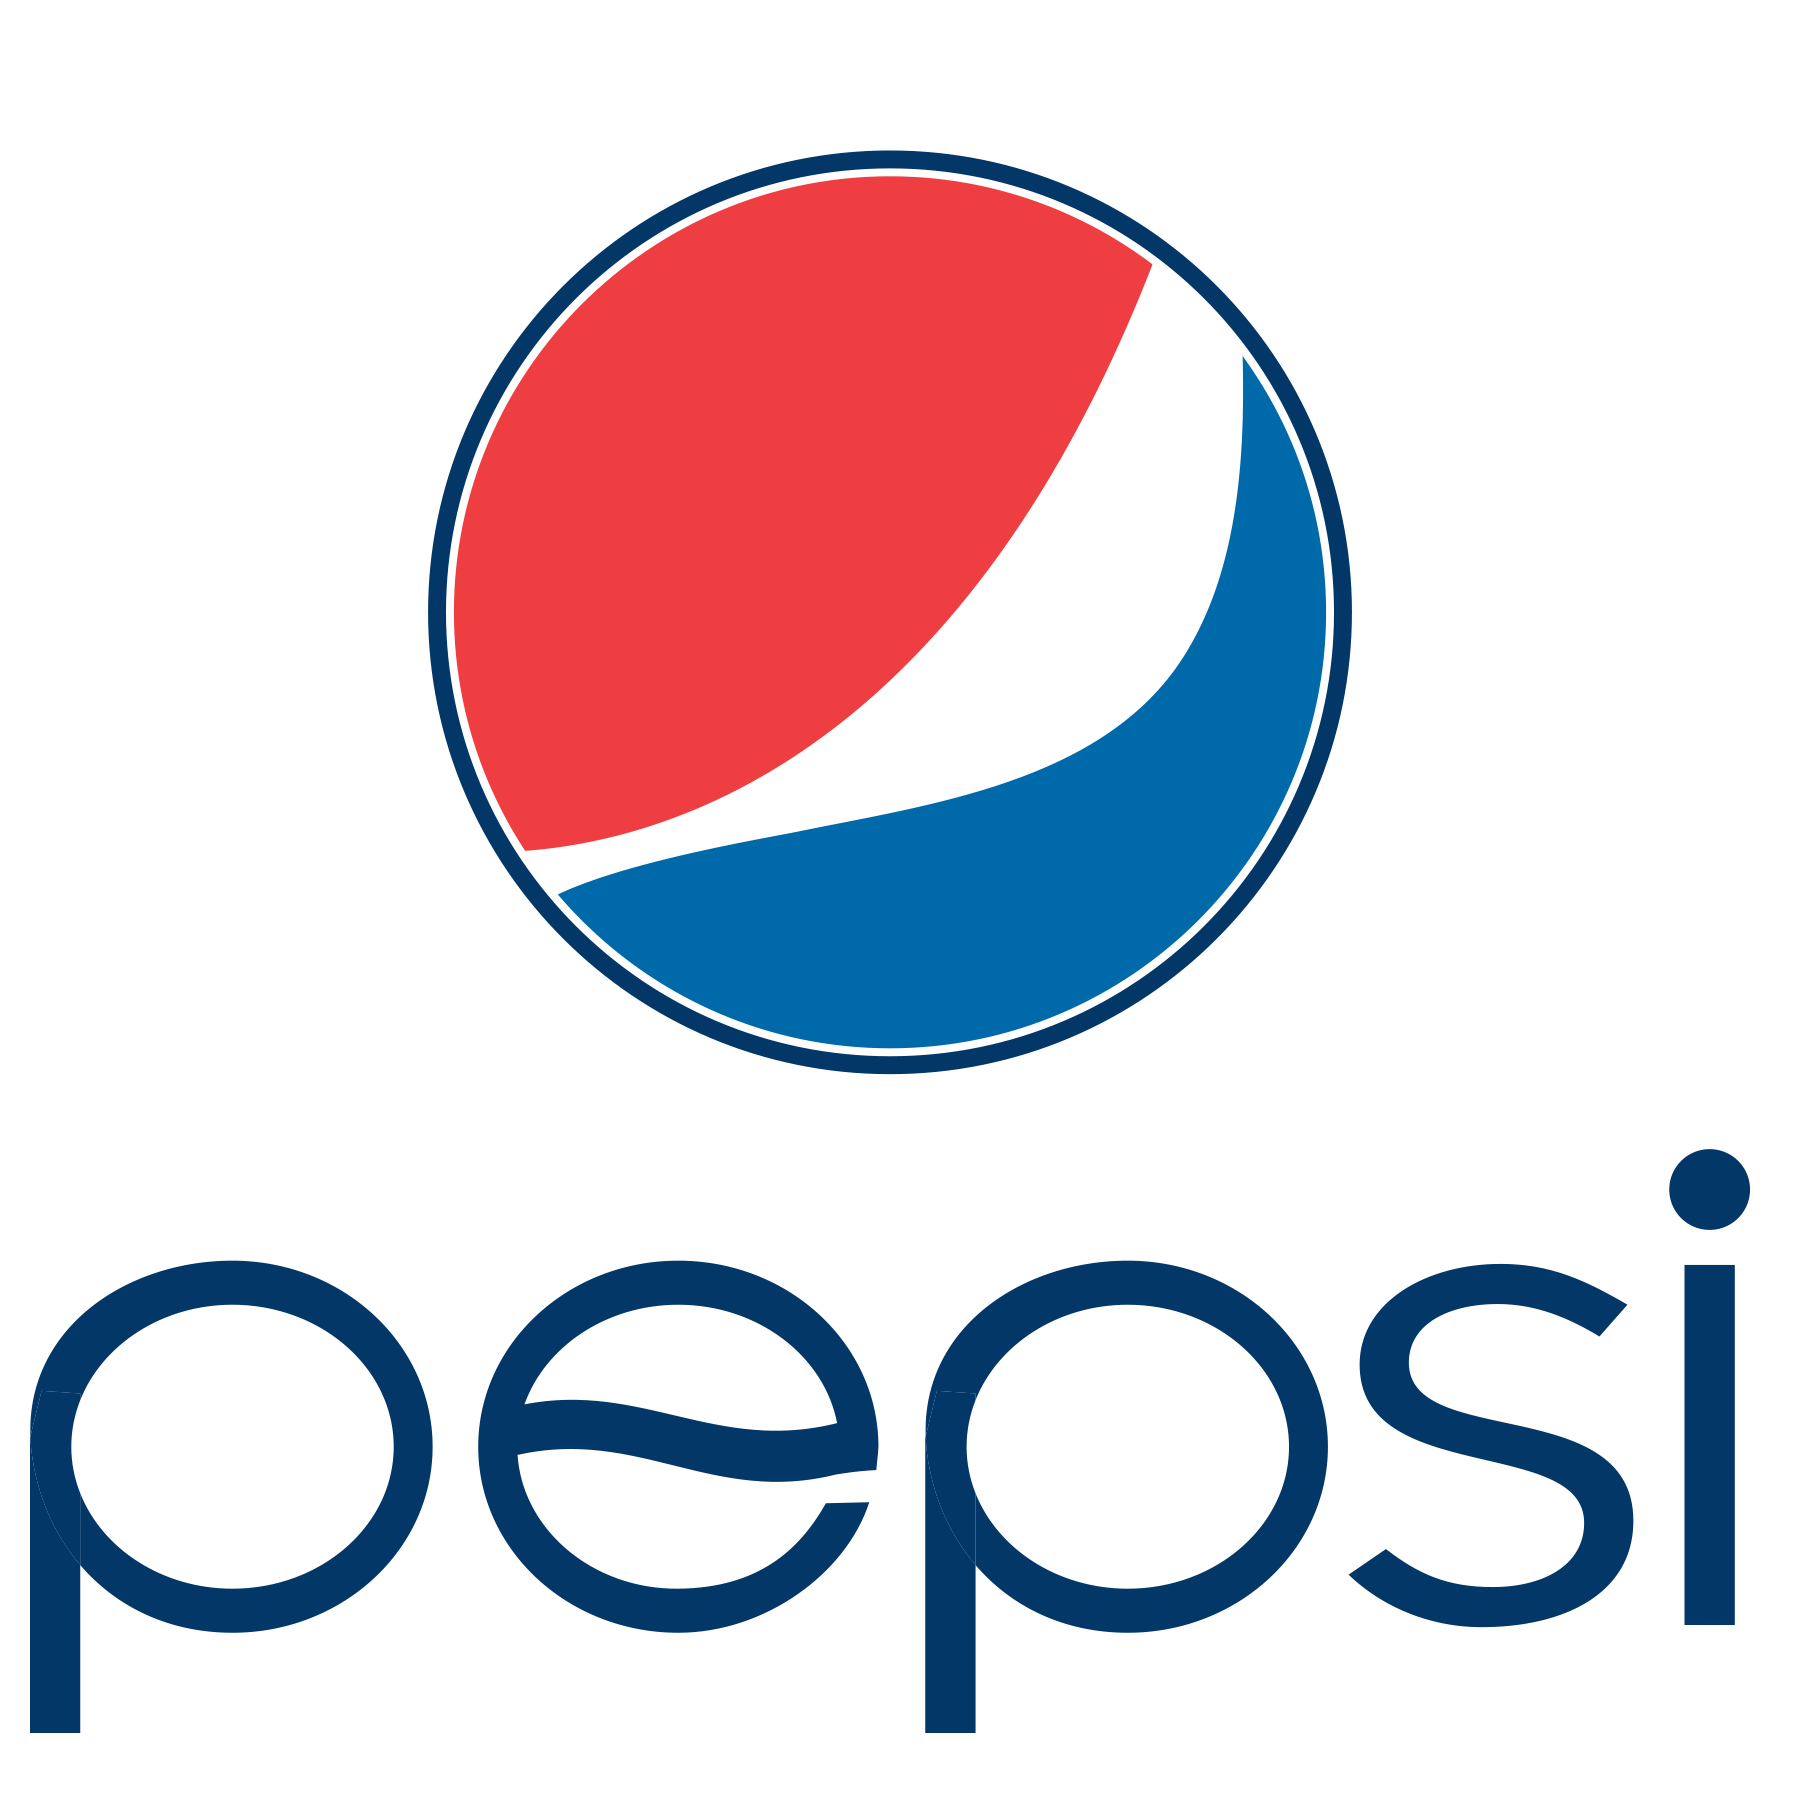 kisspng-pepsi-globe-coca-cola-logo-portable-network-graphi-5c5369cdd7d8b6.2995682815489704458841 Big Fish